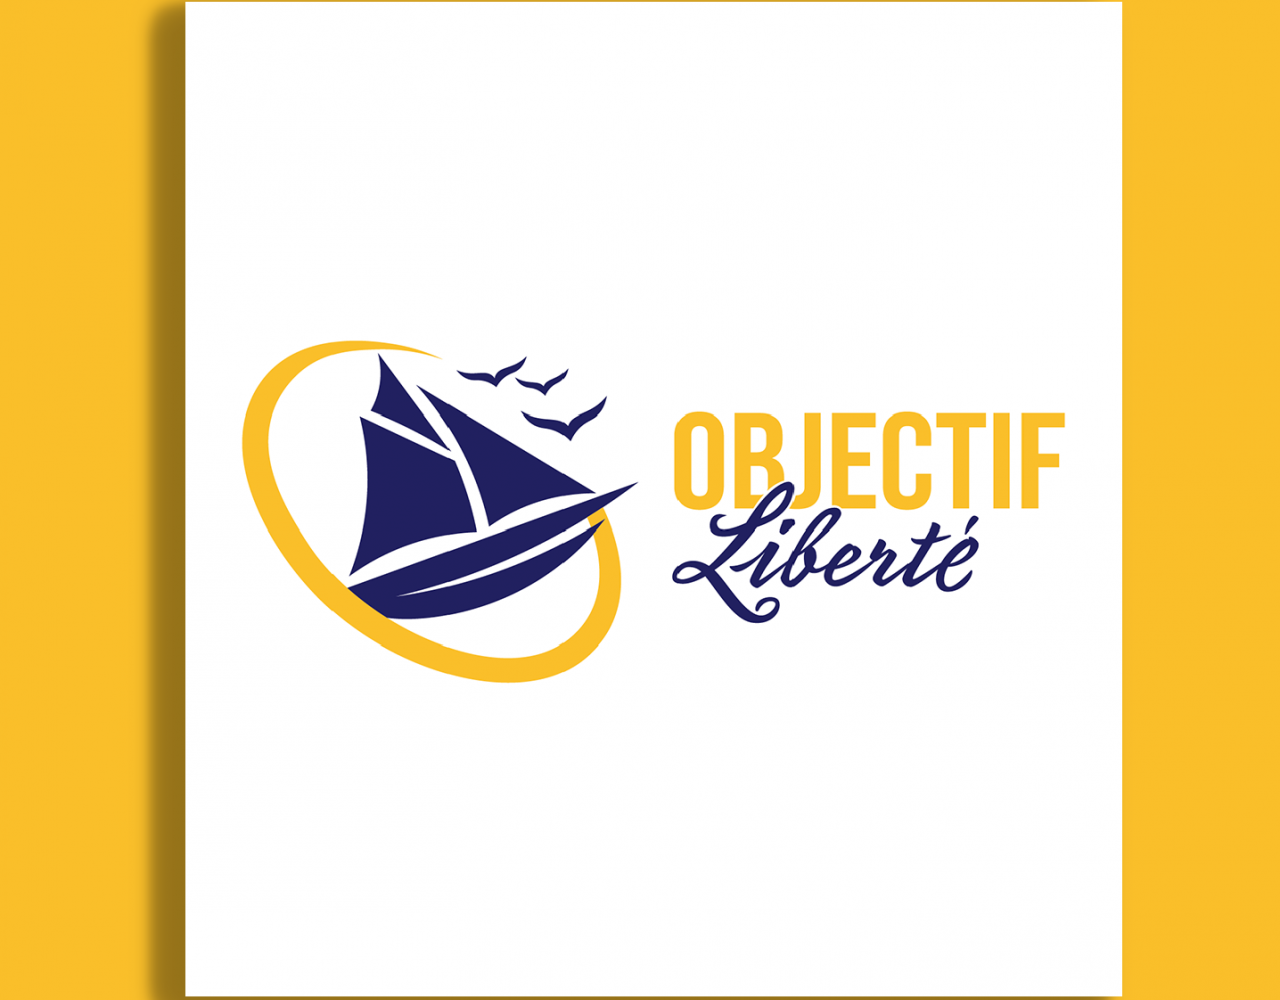 Logo de l'entreprise objectif liberté représentant un voilier et des oiseaux